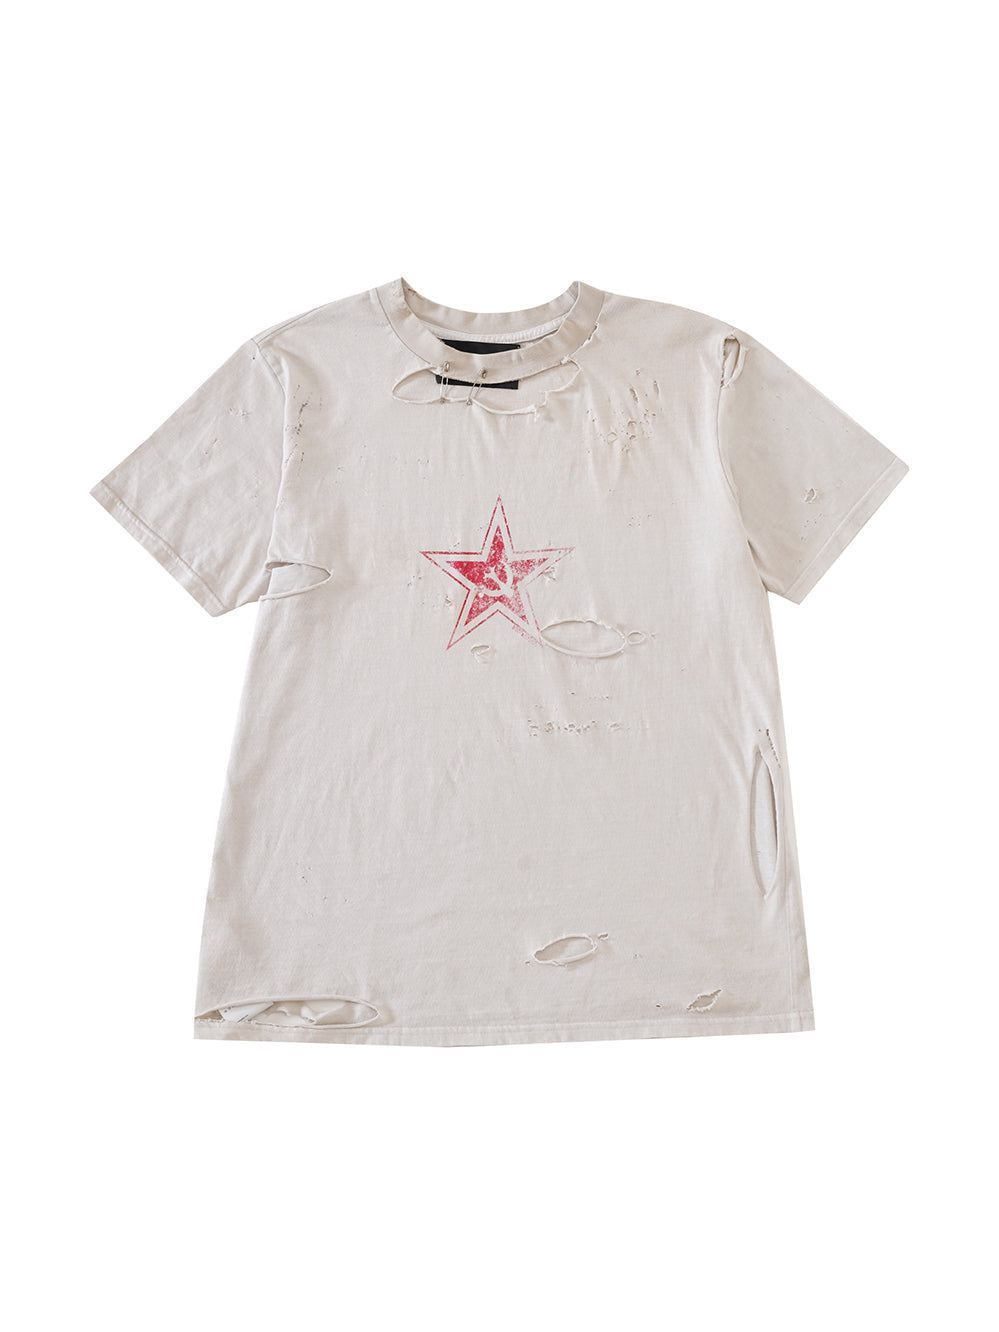 Star print distressed T-shirt